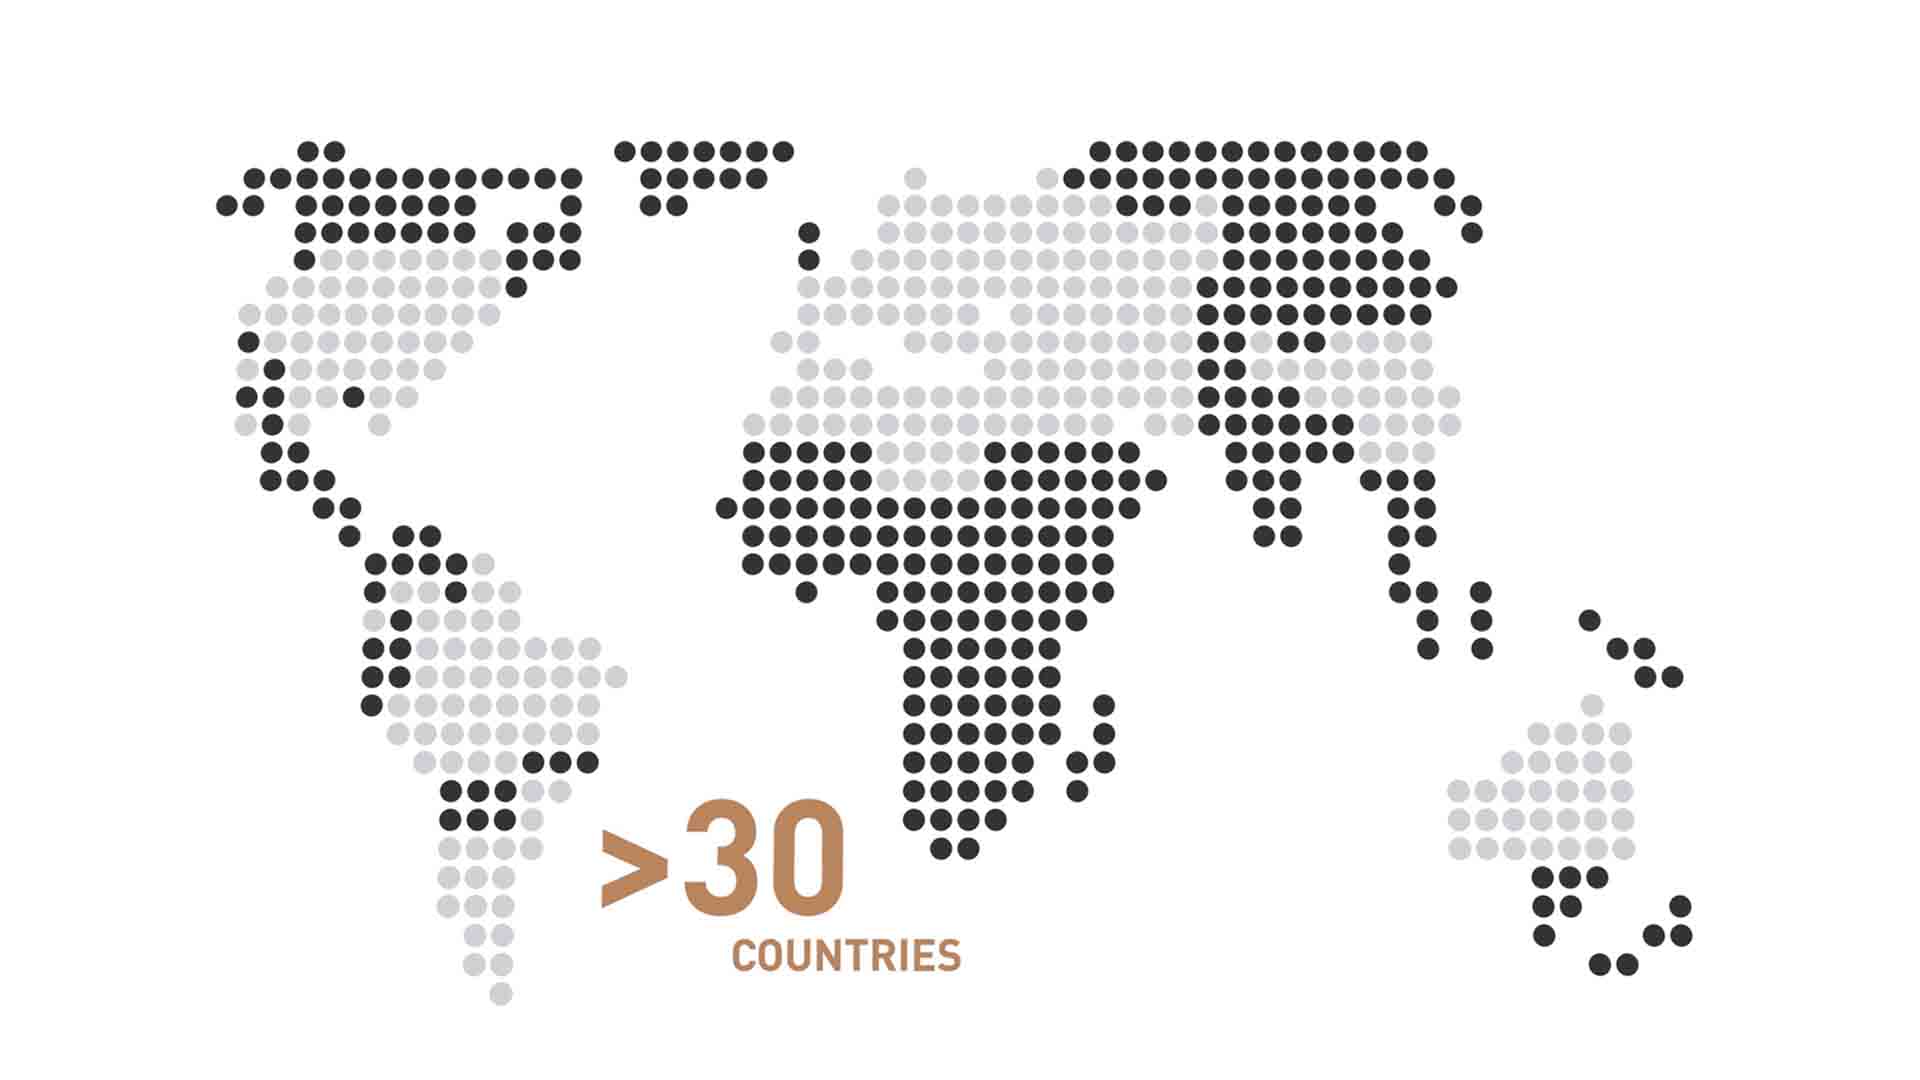 Das Bild zeigt eine Animation einer Weltkarte. Sie besteht nur aus kleinen Pixeln in Vierecken. Der untere Teil des Bildes zeigt die Worte ">30 Countries". Das Bild dient als Sliderbild für den Portfolioeintrag "PROGENIUM Erkärfilm" von Panda Pictures.